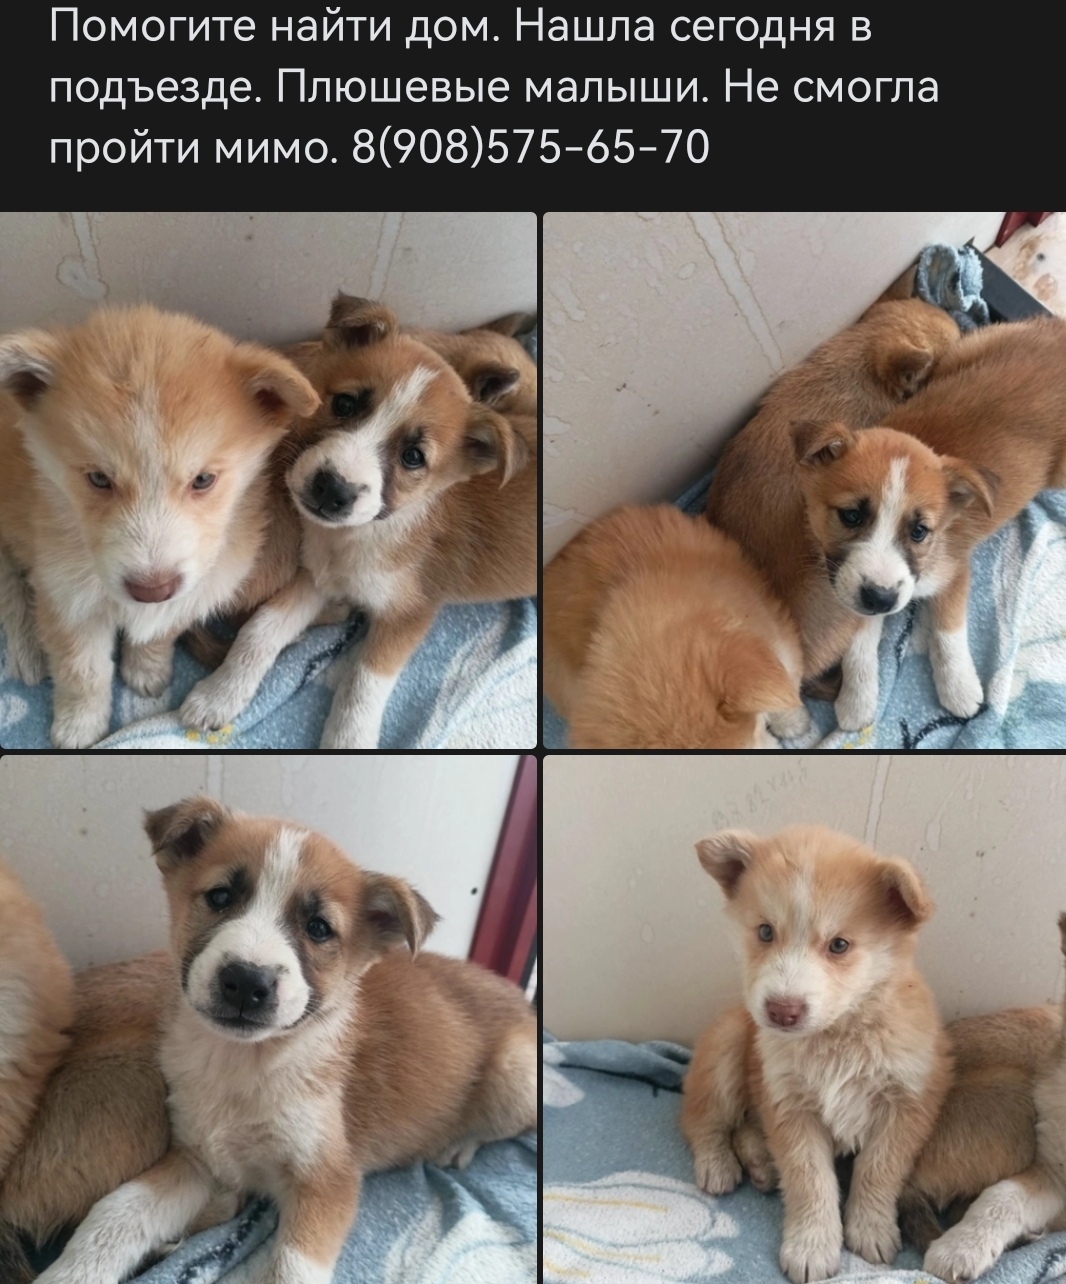 Найдены щенки на ул. А. Шмакова, 33, Челябинск